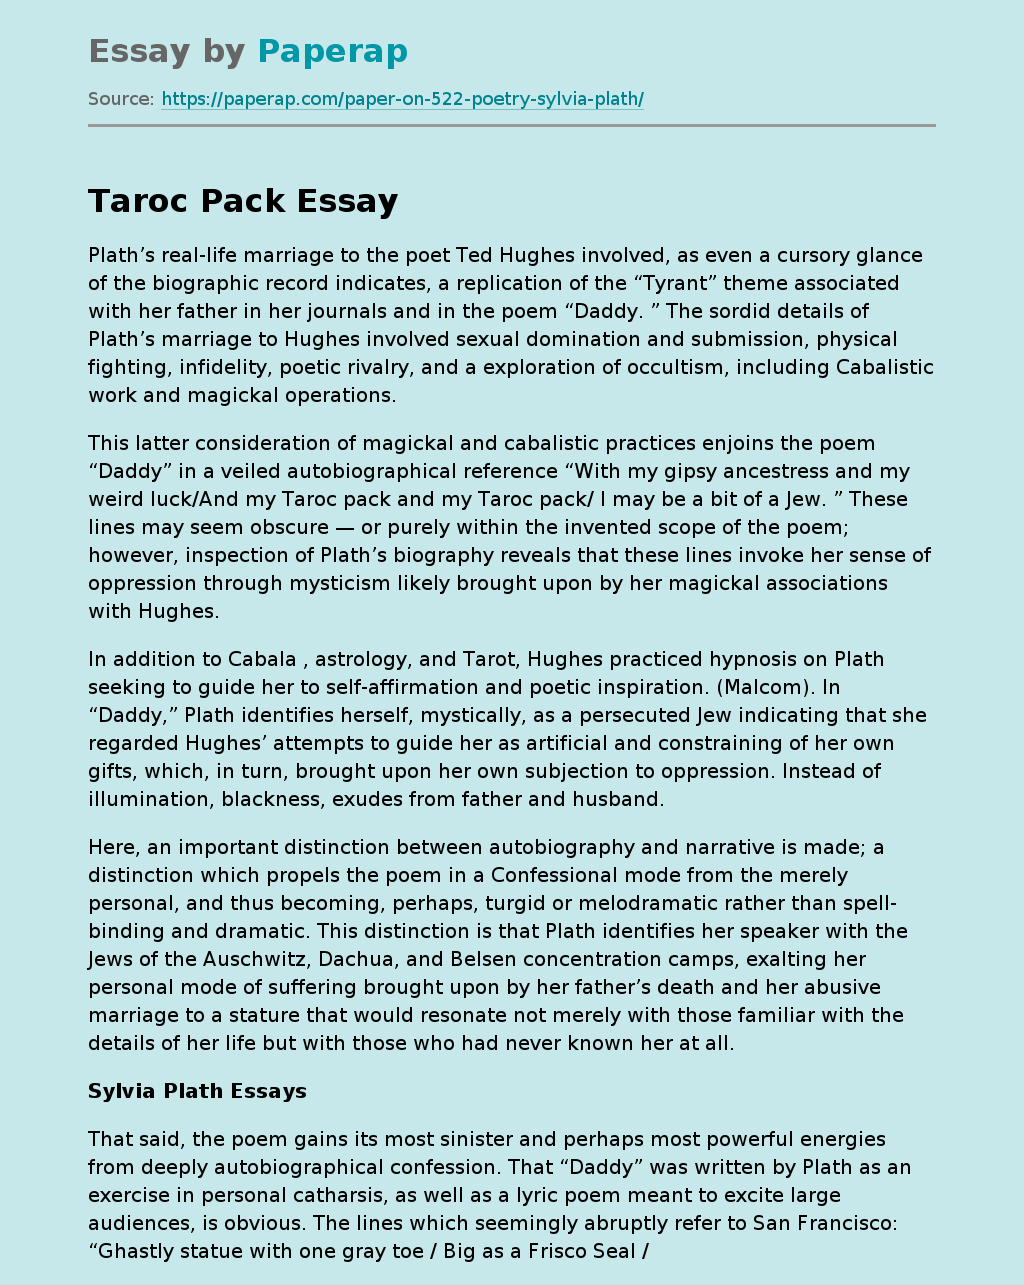 Taroc Pack Essay